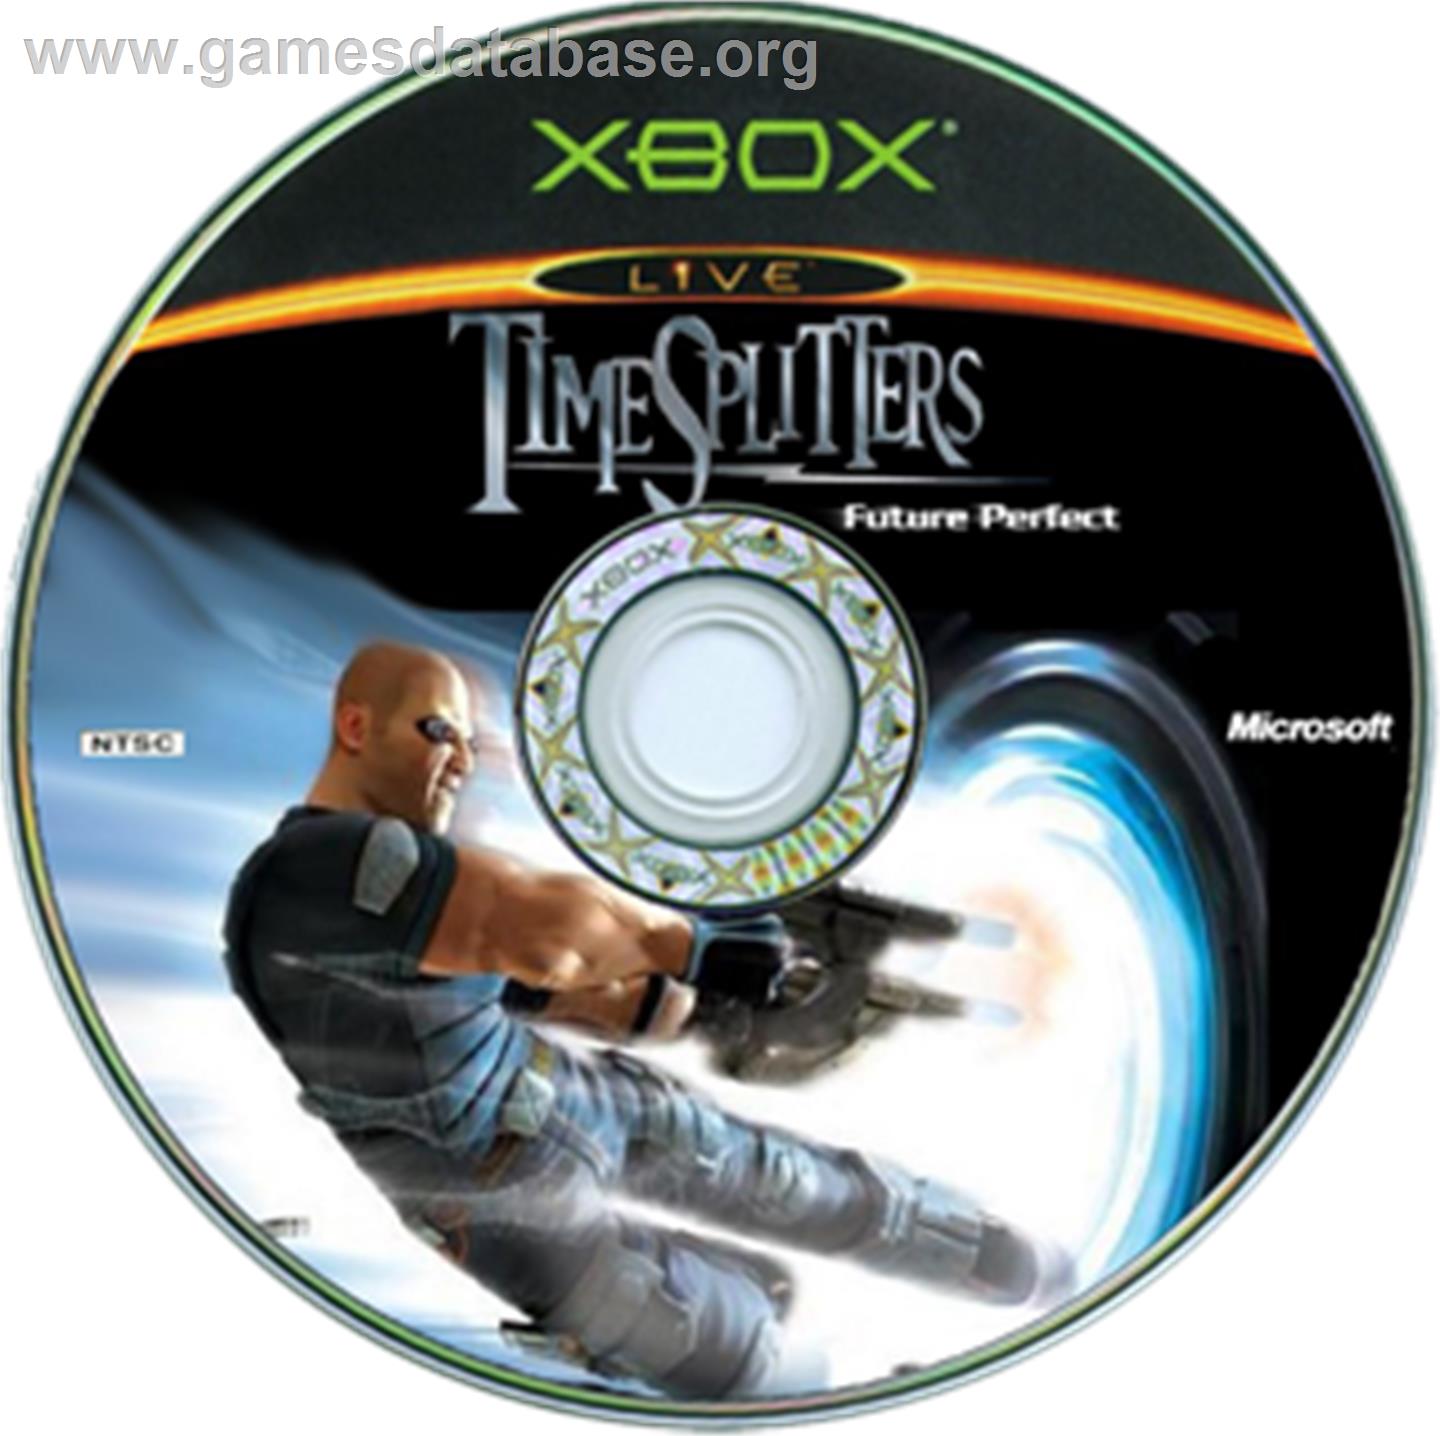 TimeSplitters: Future Perfect - Microsoft Xbox - Artwork - CD